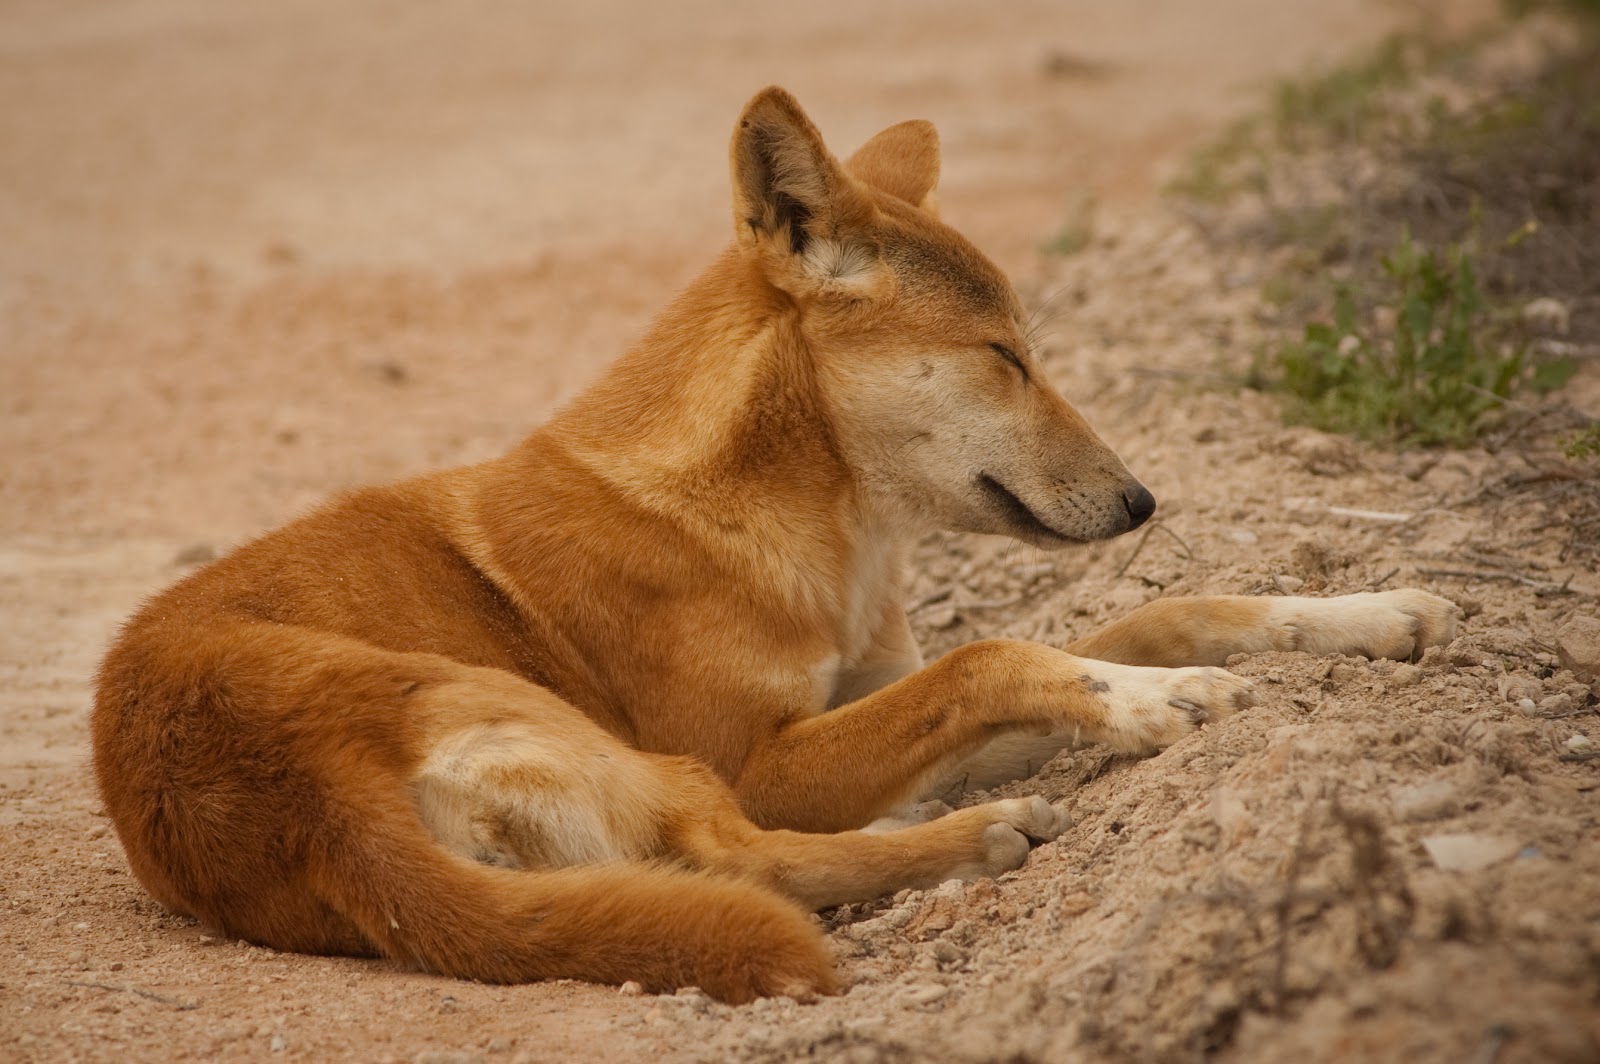 Dingo - Dog Of The Desert [1991]